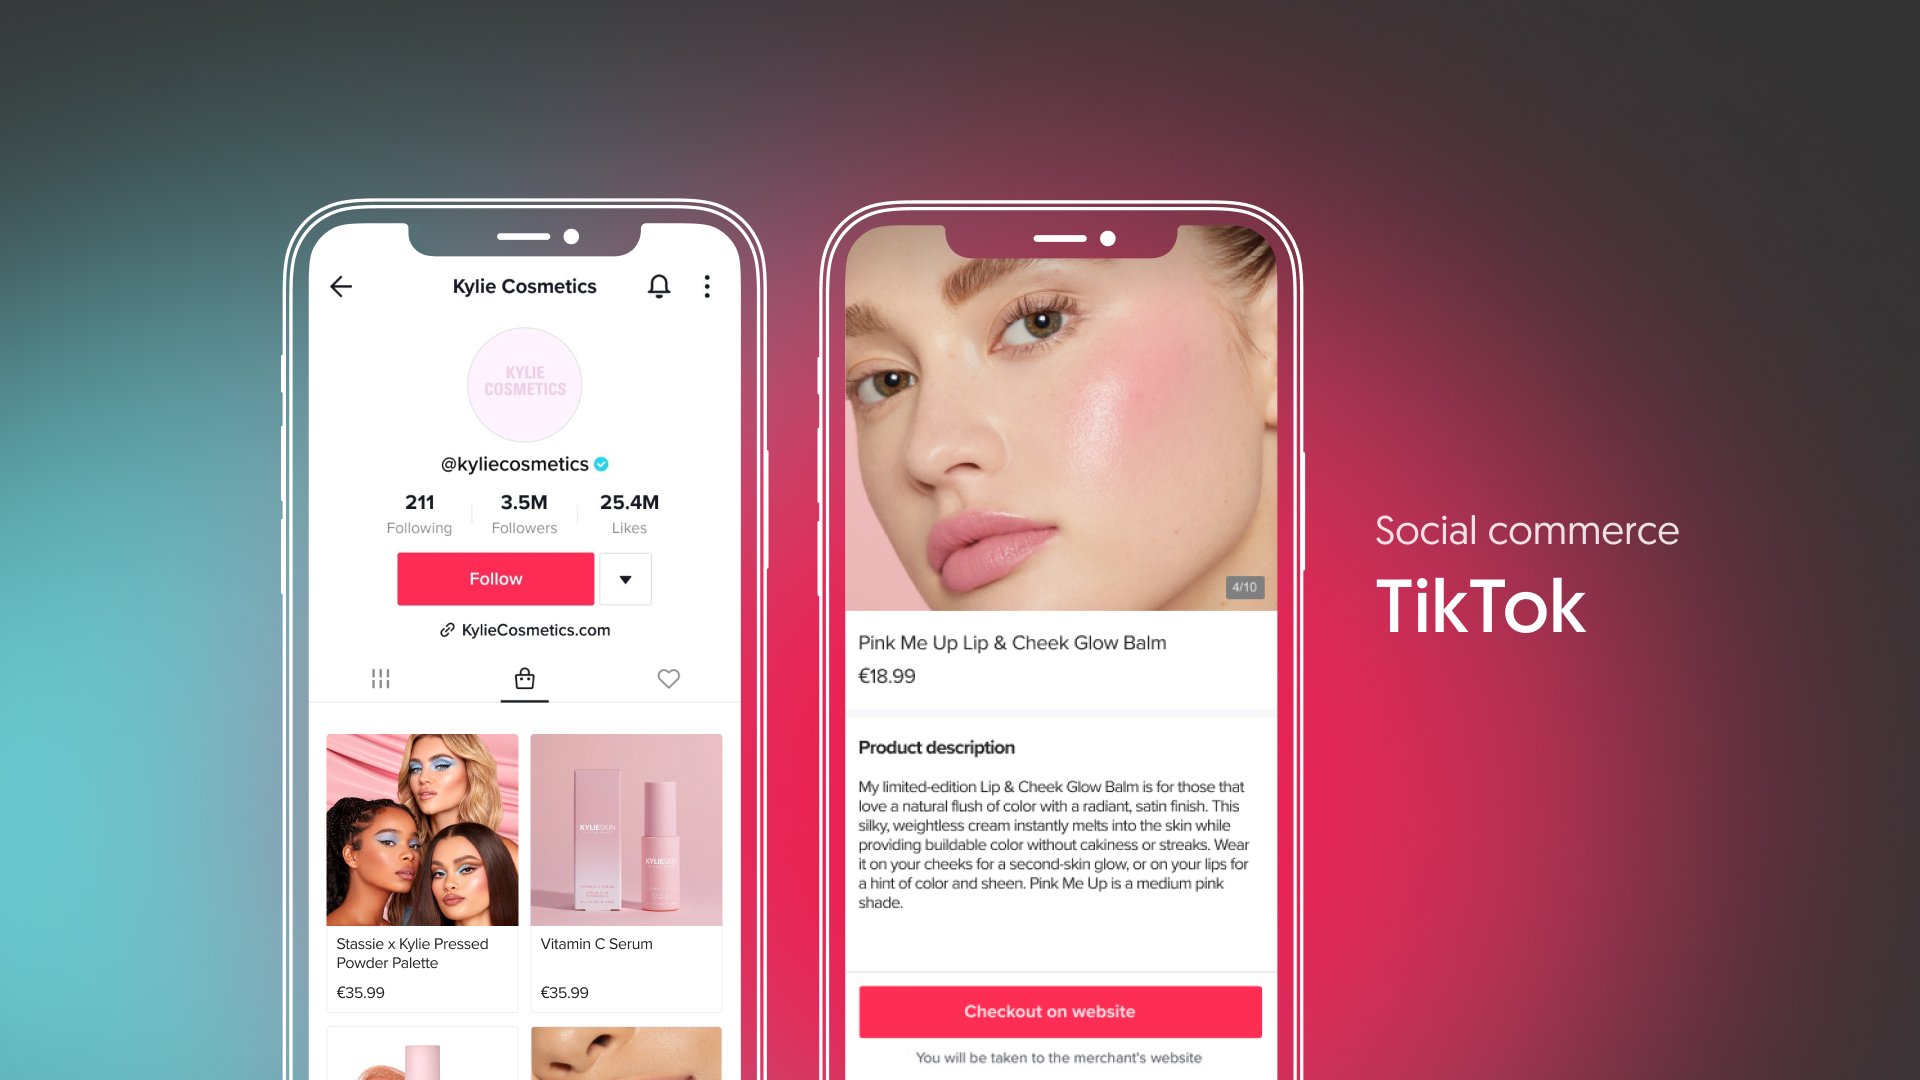 Social commerce – TikTok